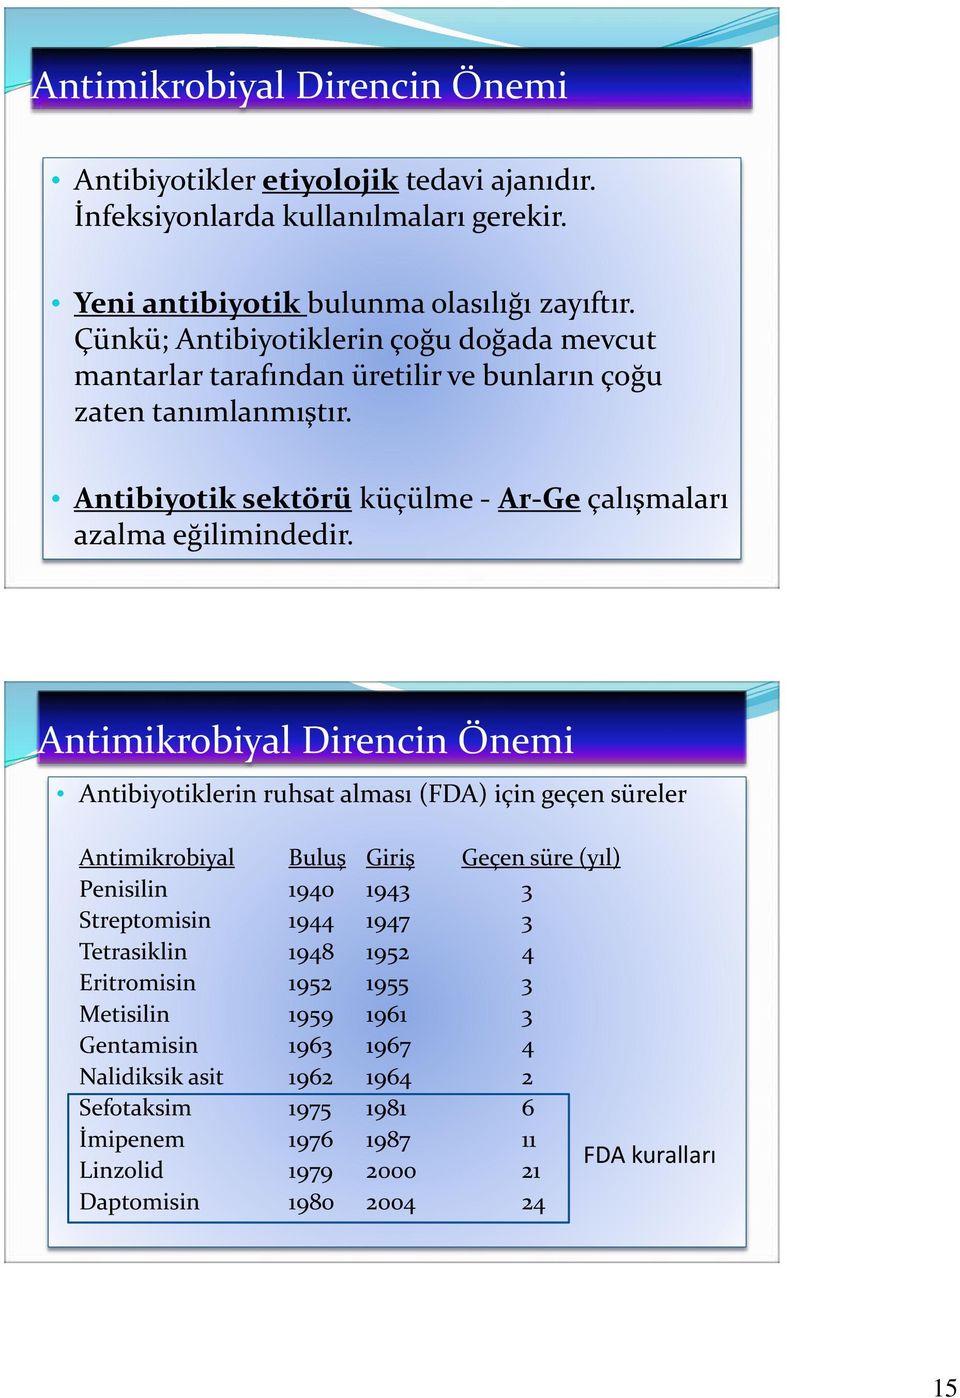 Antimikrobiyal Direncin Önemi Antibiyotiklerin ruhsat alması (FDA) için geçen süreler Antimikrobiyal Buluş Giriş Geçen süre (yıl) Penisilin 1940 1943 3 Streptomisin 1944 1947 3